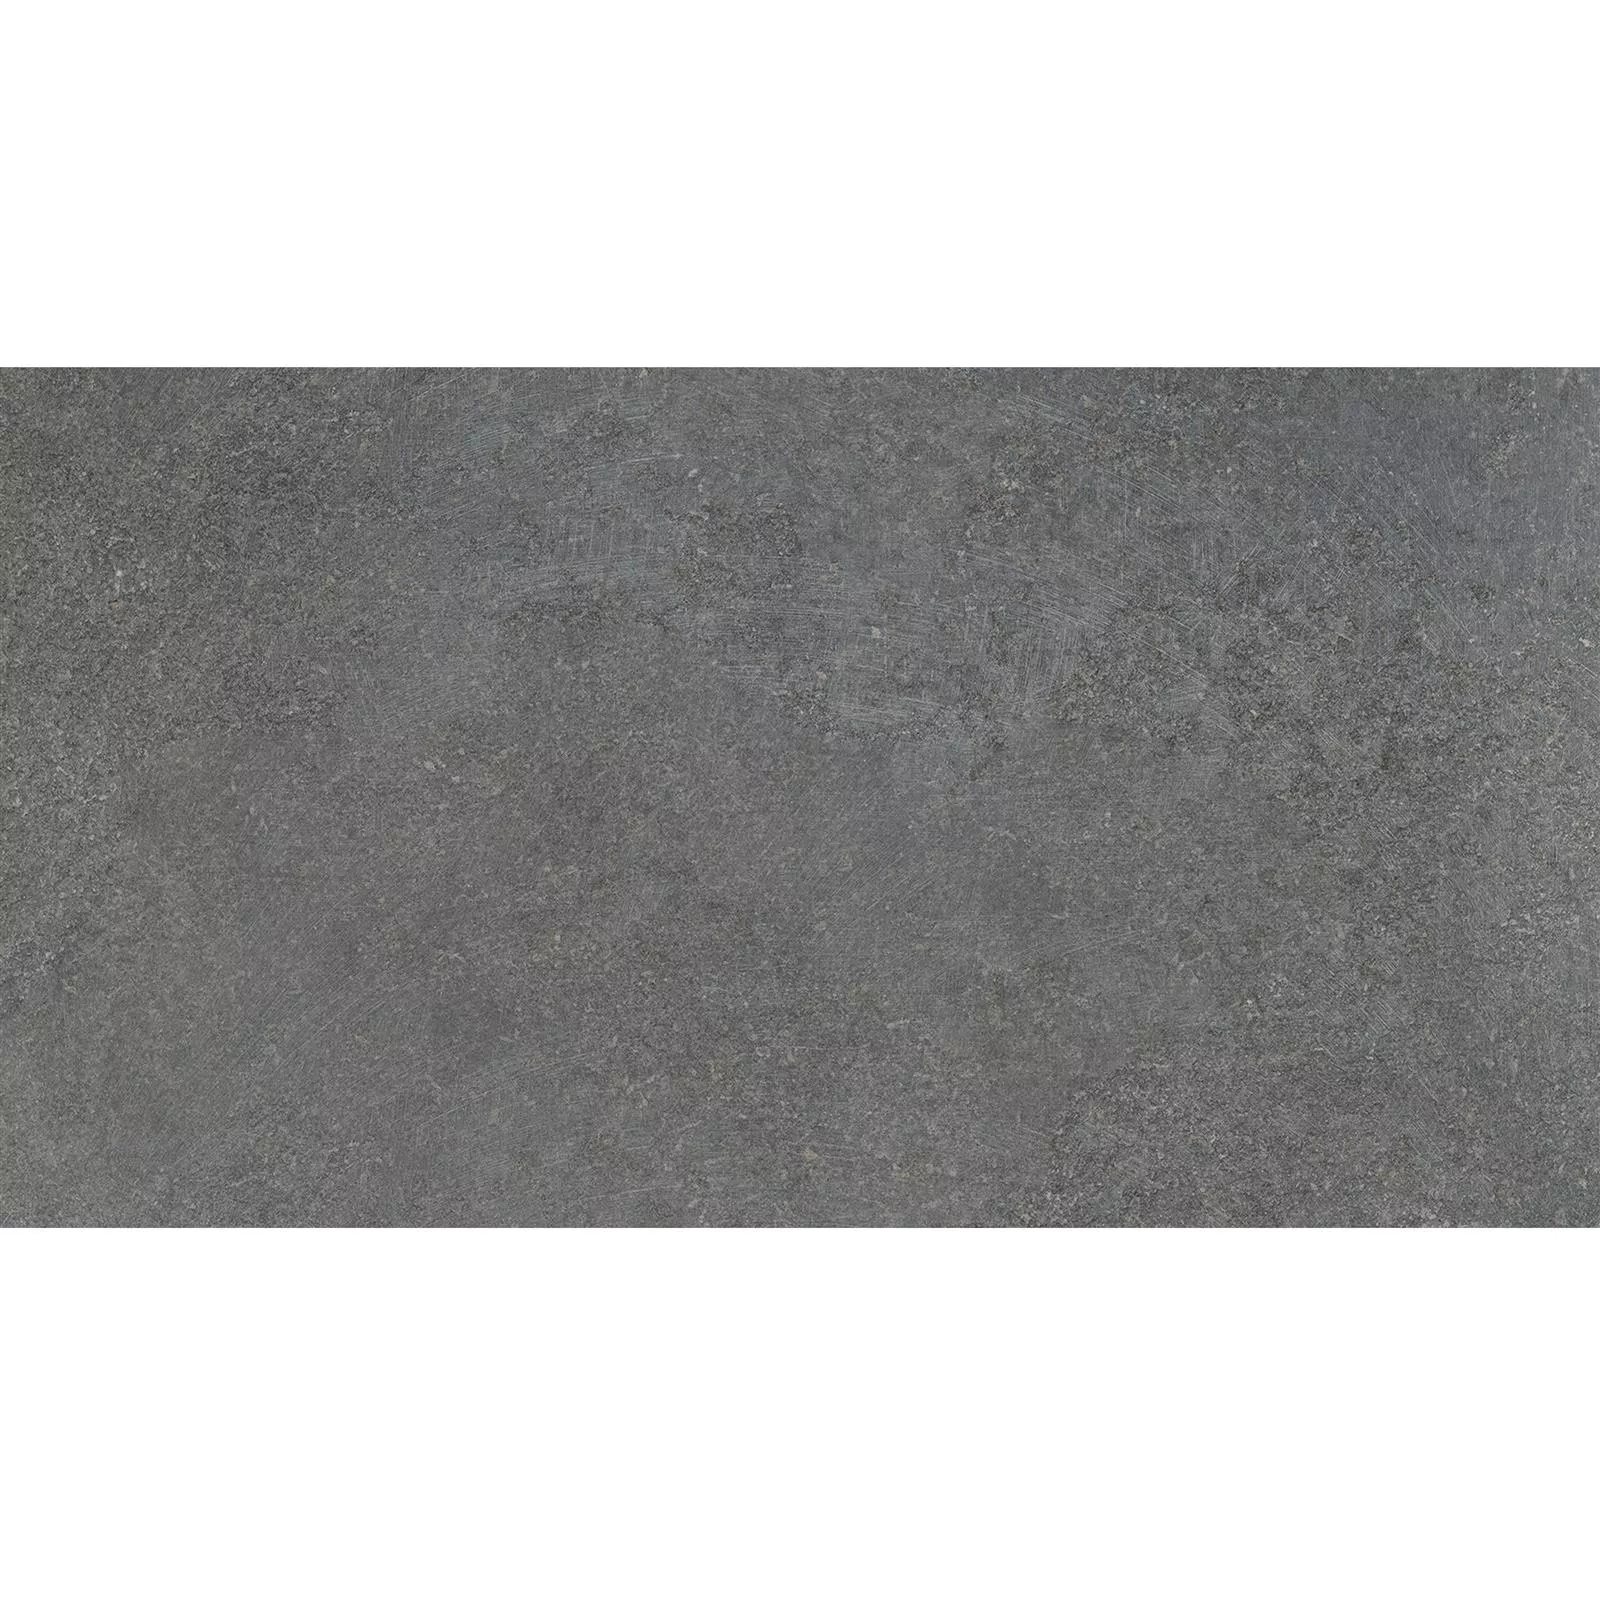 Podlahové Dlaždice Kámen Vzhled Horizon Antracitová 30x60cm